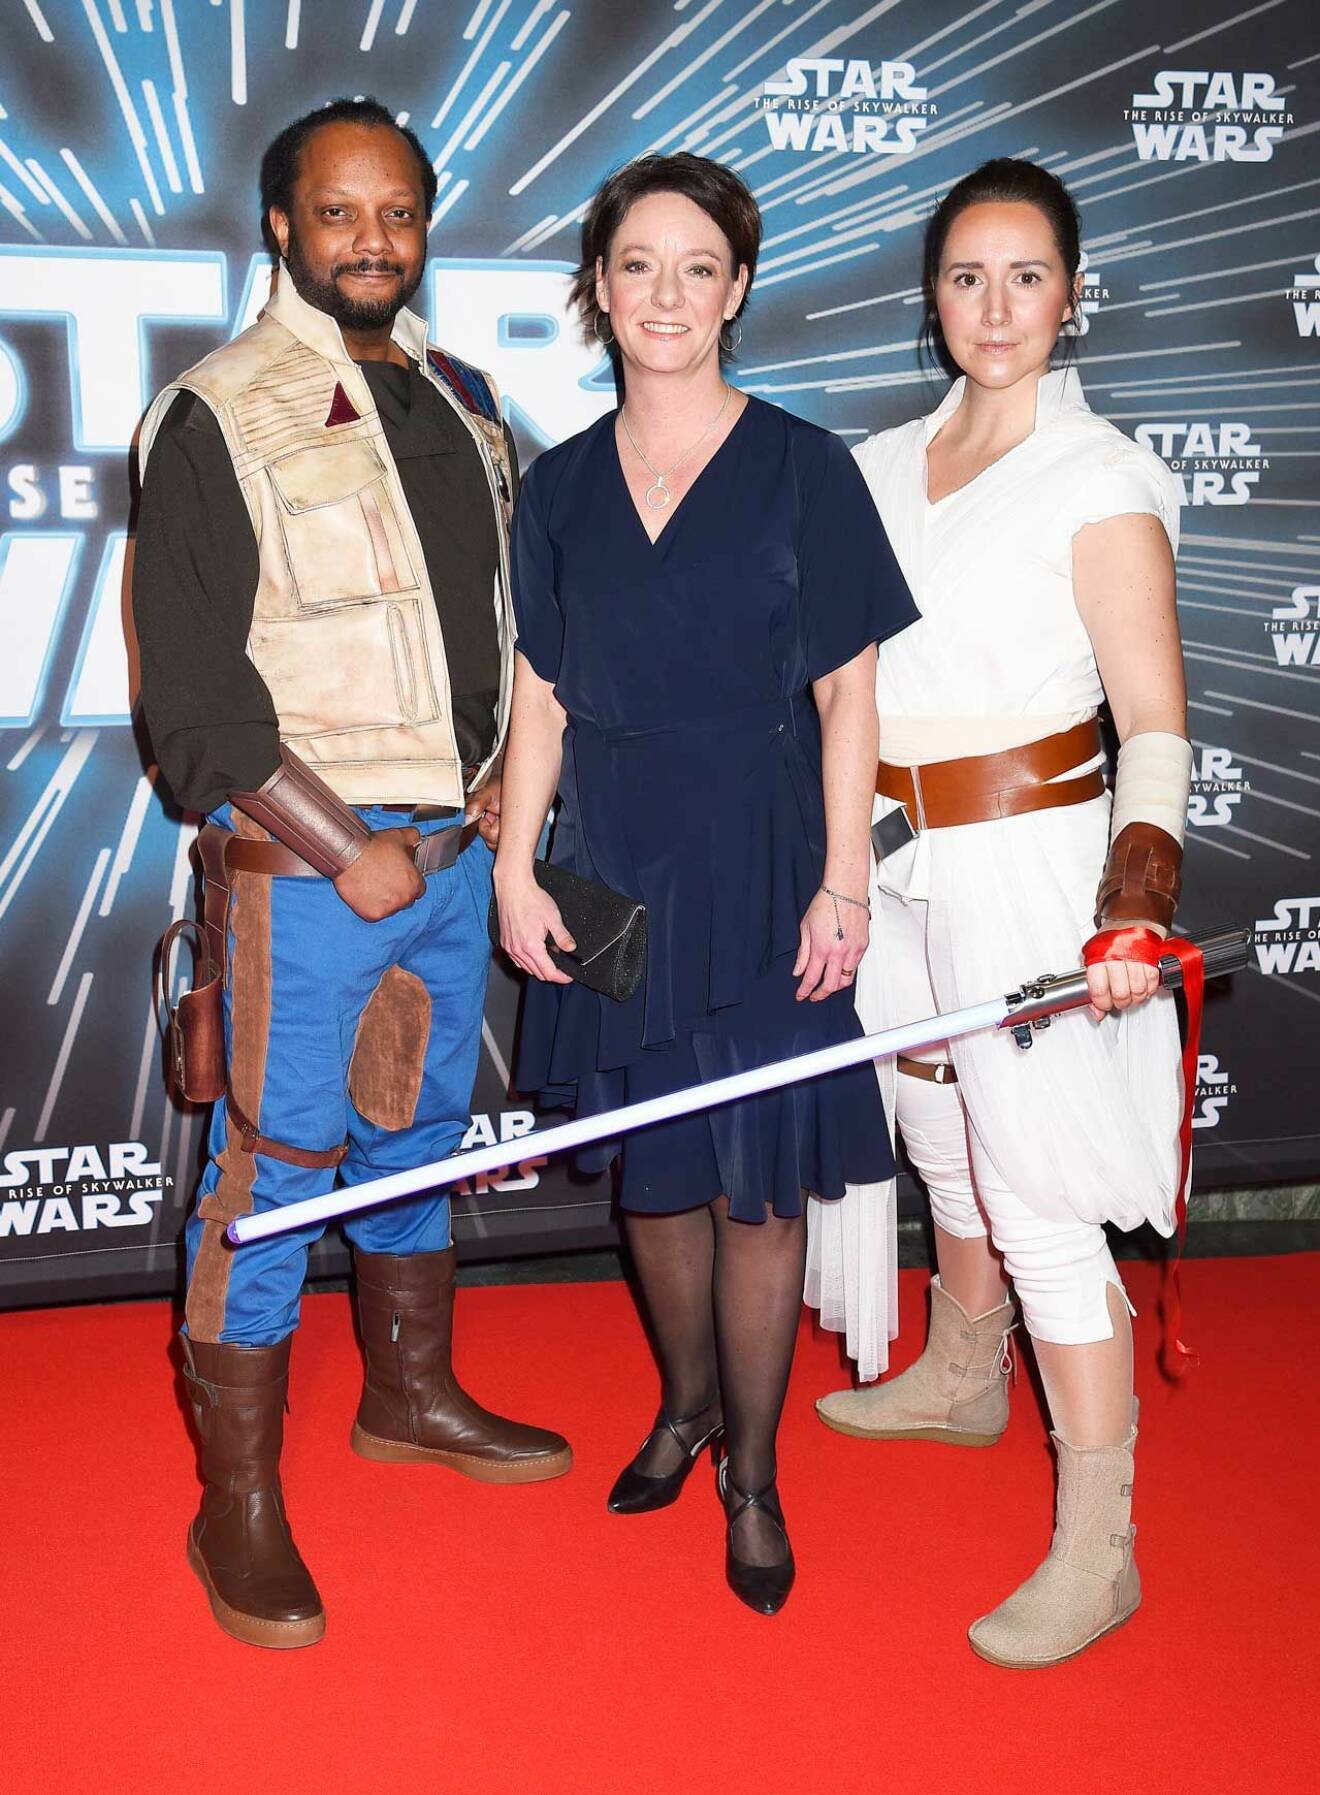 Snyggt Star Wars-flankerad på röda mattan blev Matilda Ernkrans, minister för högre utbildning och forskning. 